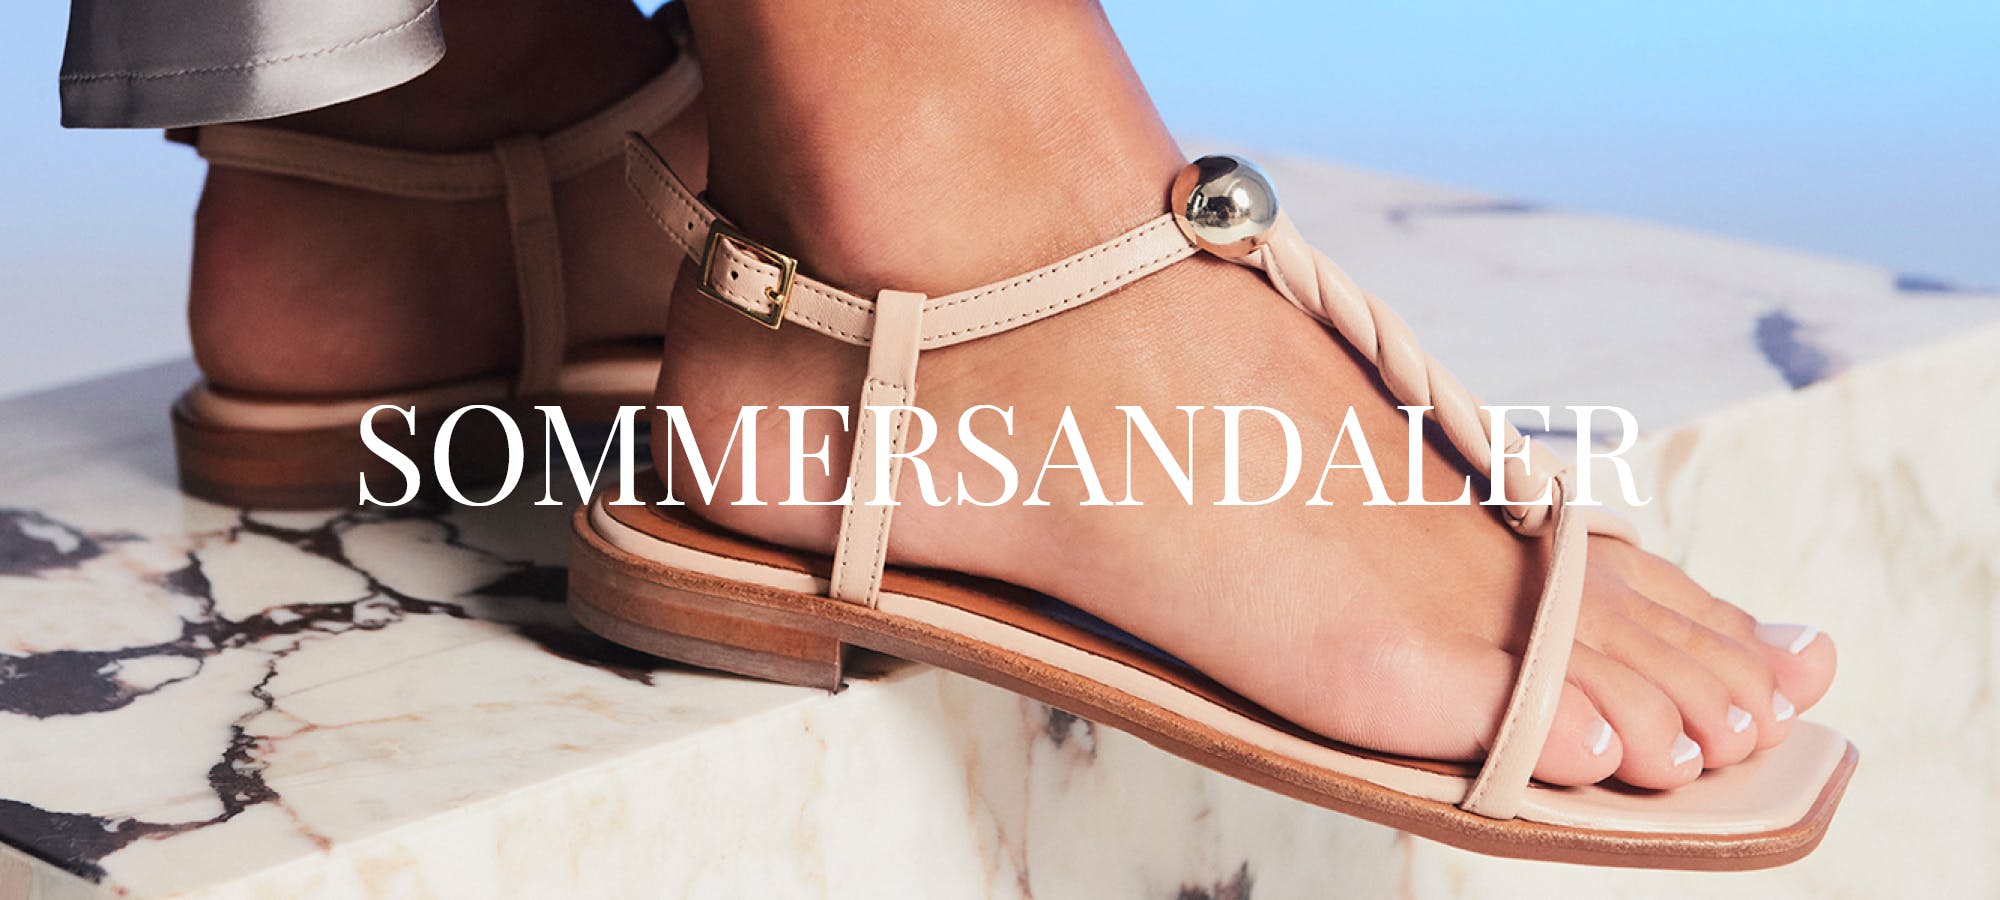 stun kanal Almægtig Sommersandaler | Find de bedste sandaler til sommeren | billibi.com